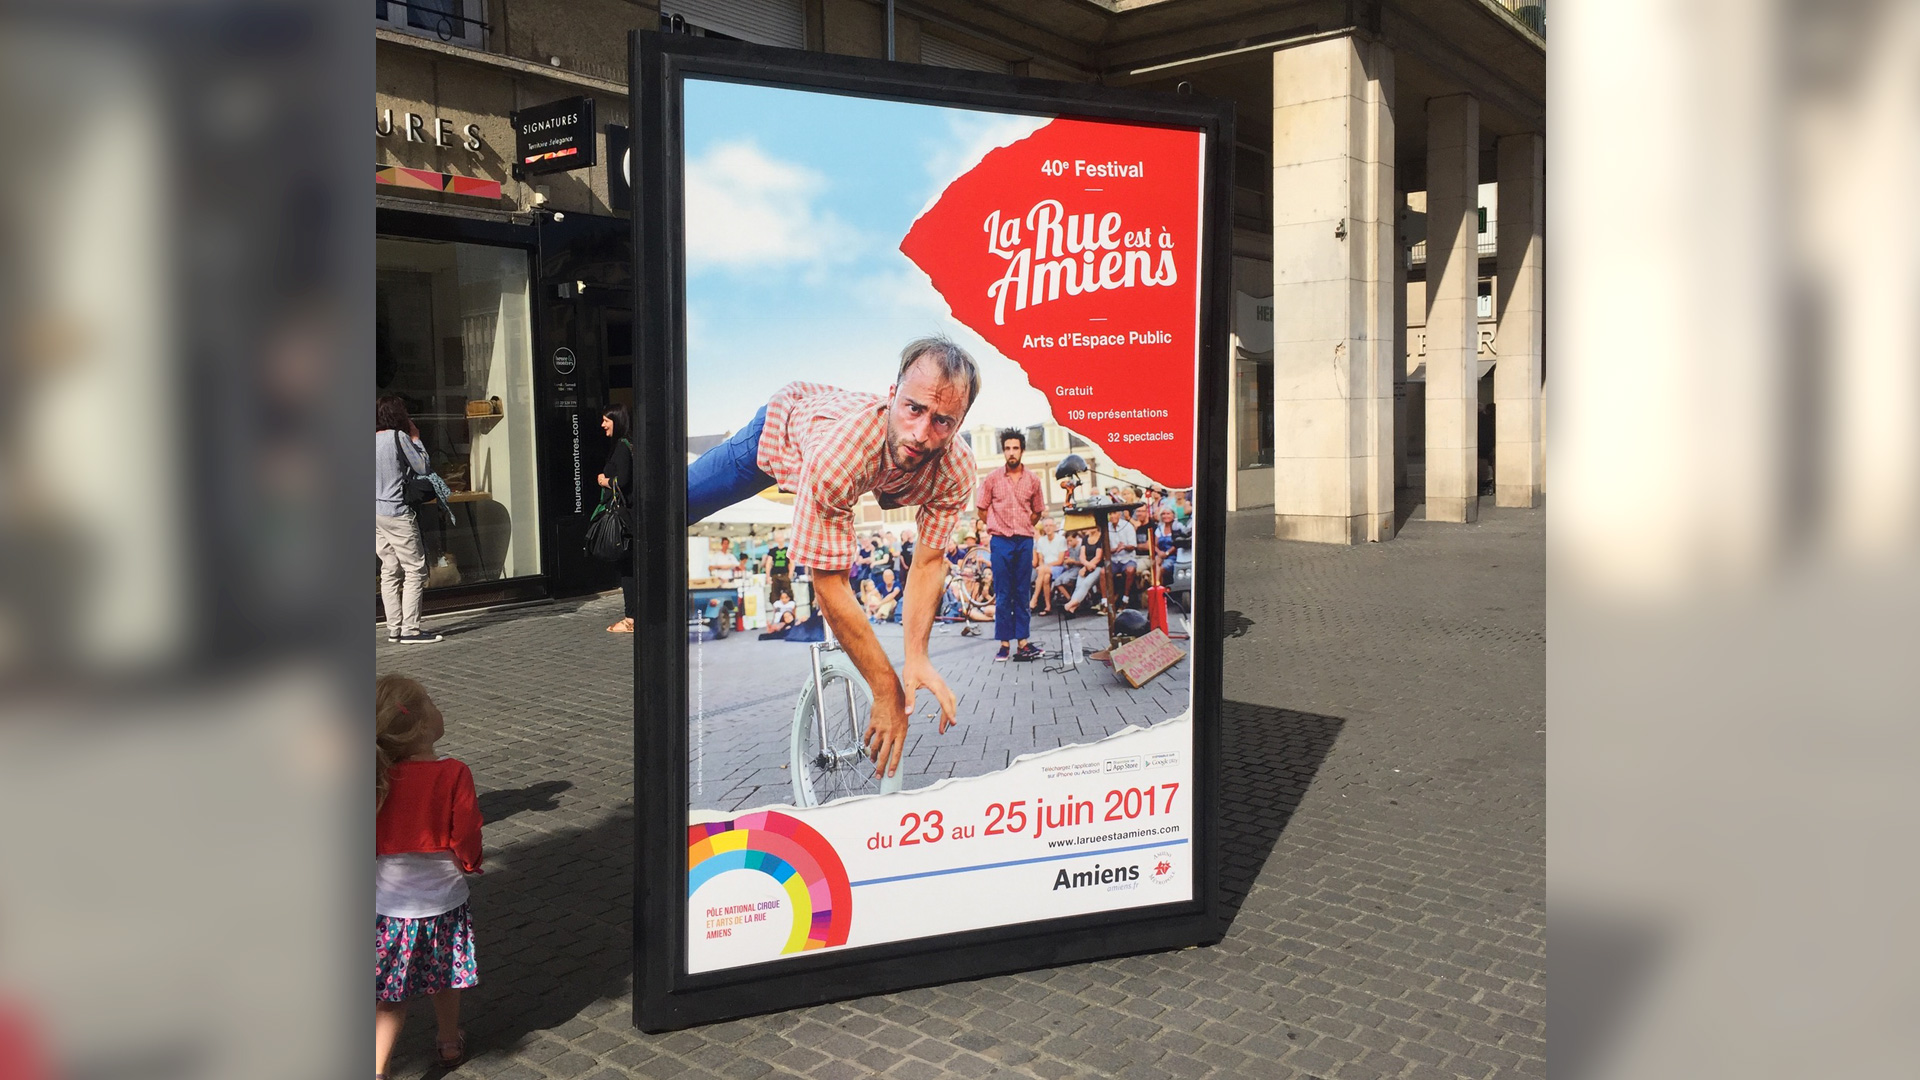 La Rue est à Amiens 2017 – Festival